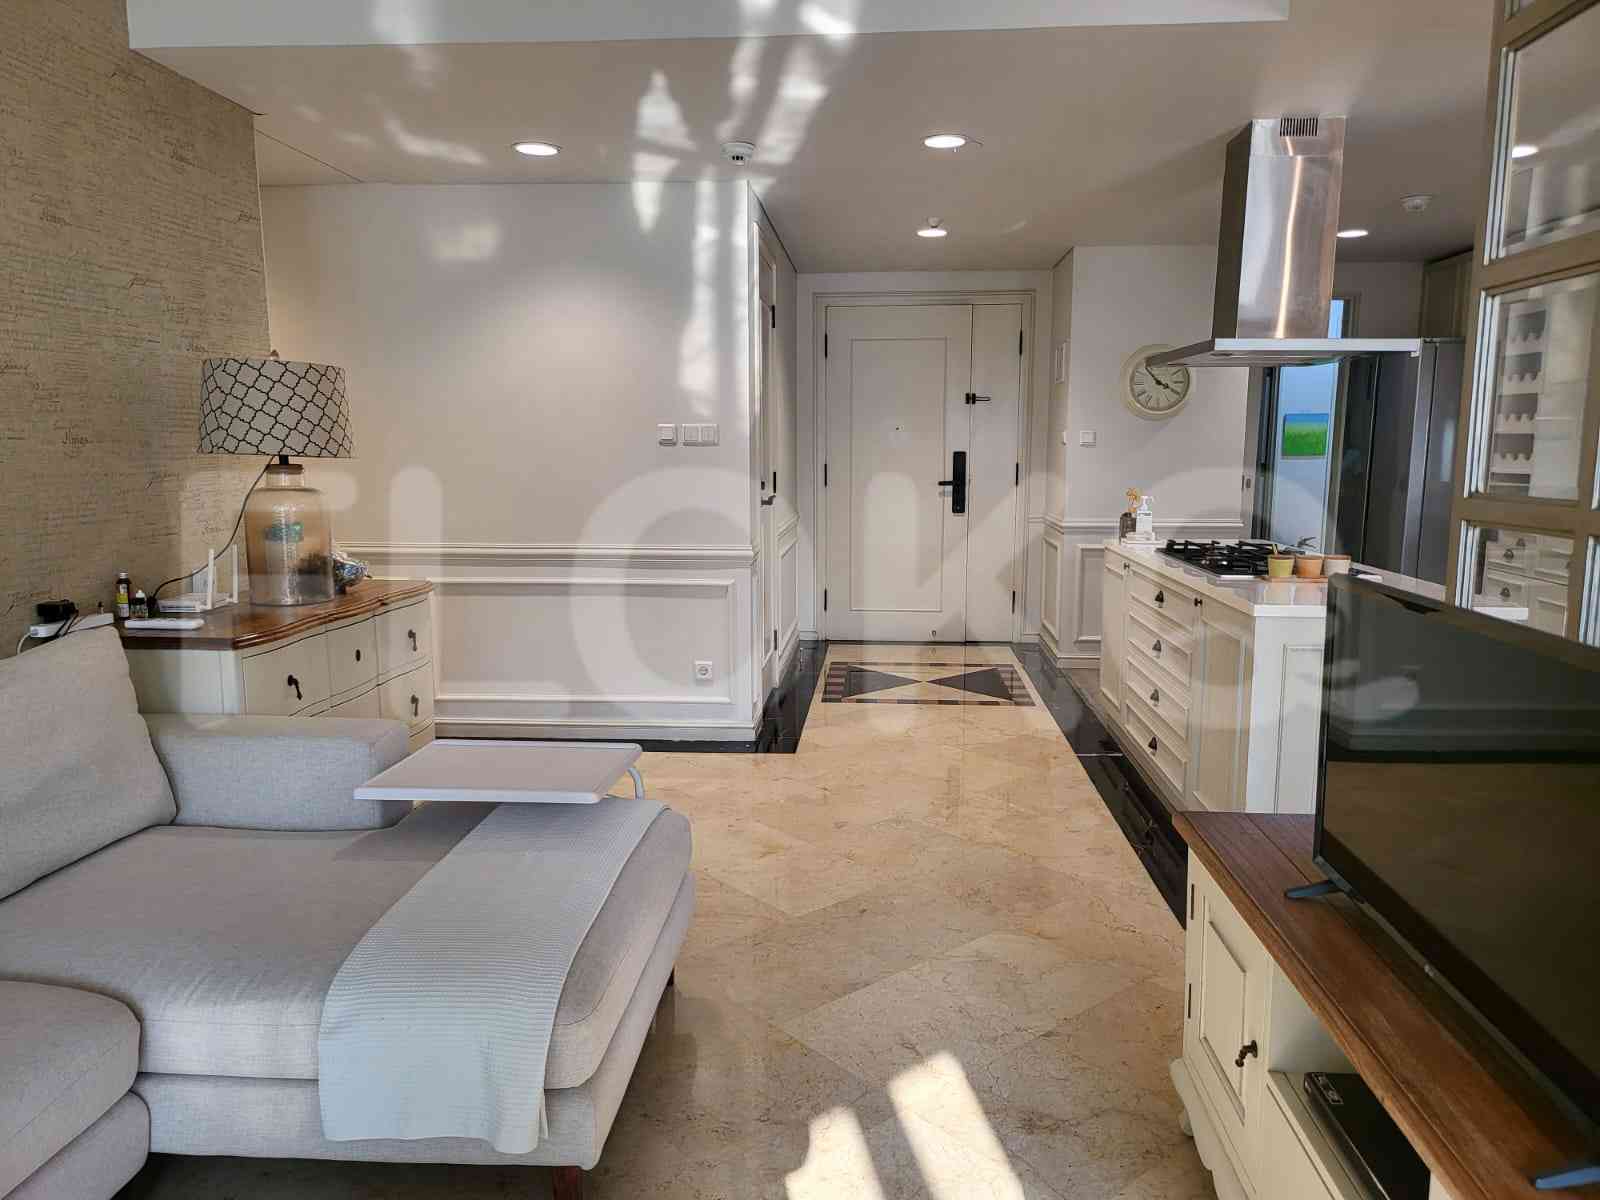 3 Bedroom on 15th Floor for Rent in Apartemen Setiabudi - fku247 3